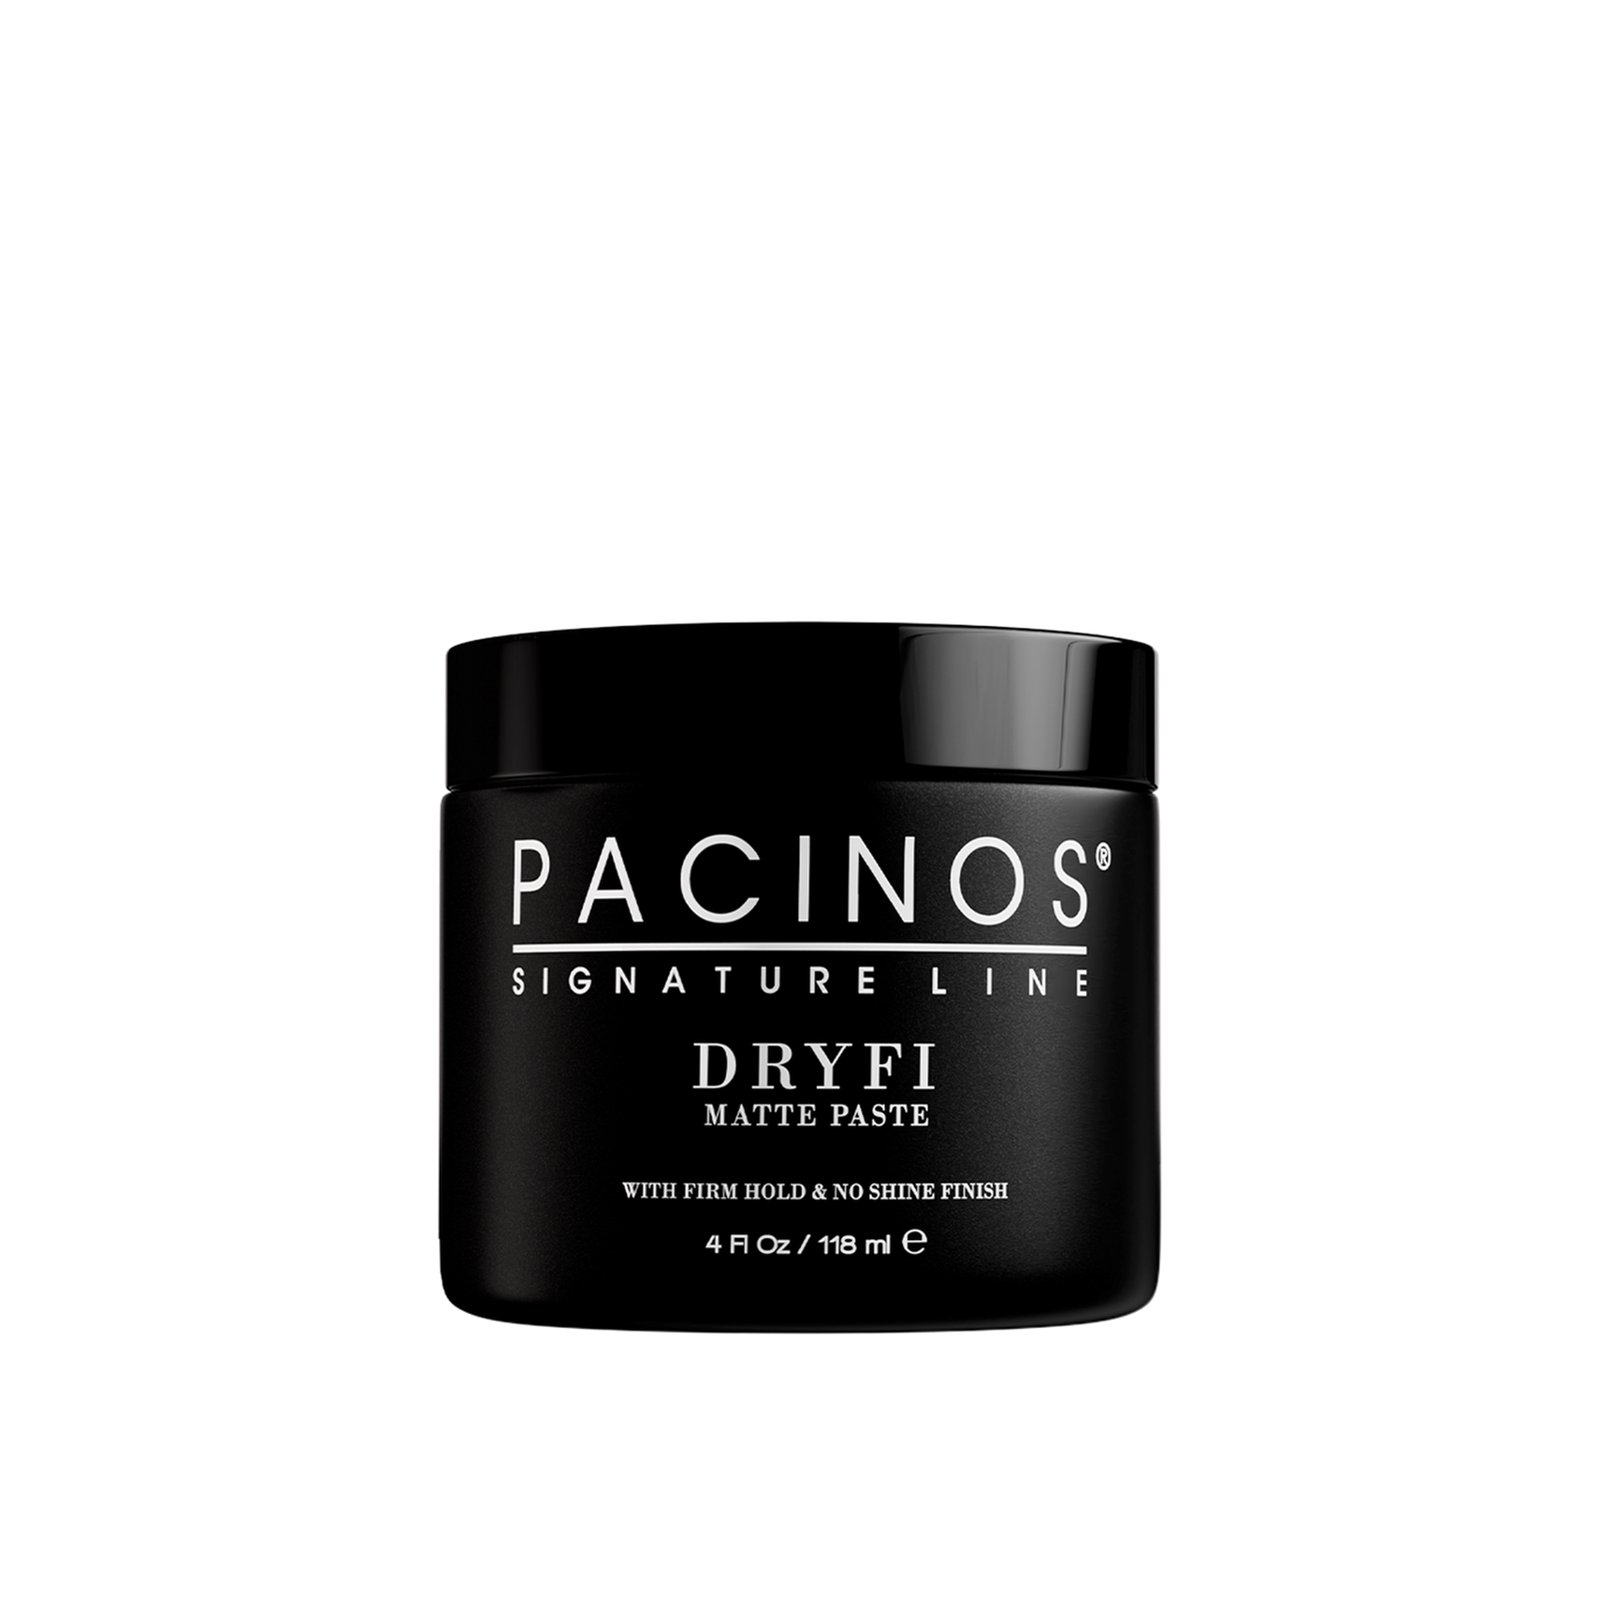 Pacinos Signature Line Dryfi Matte Paste 118ml